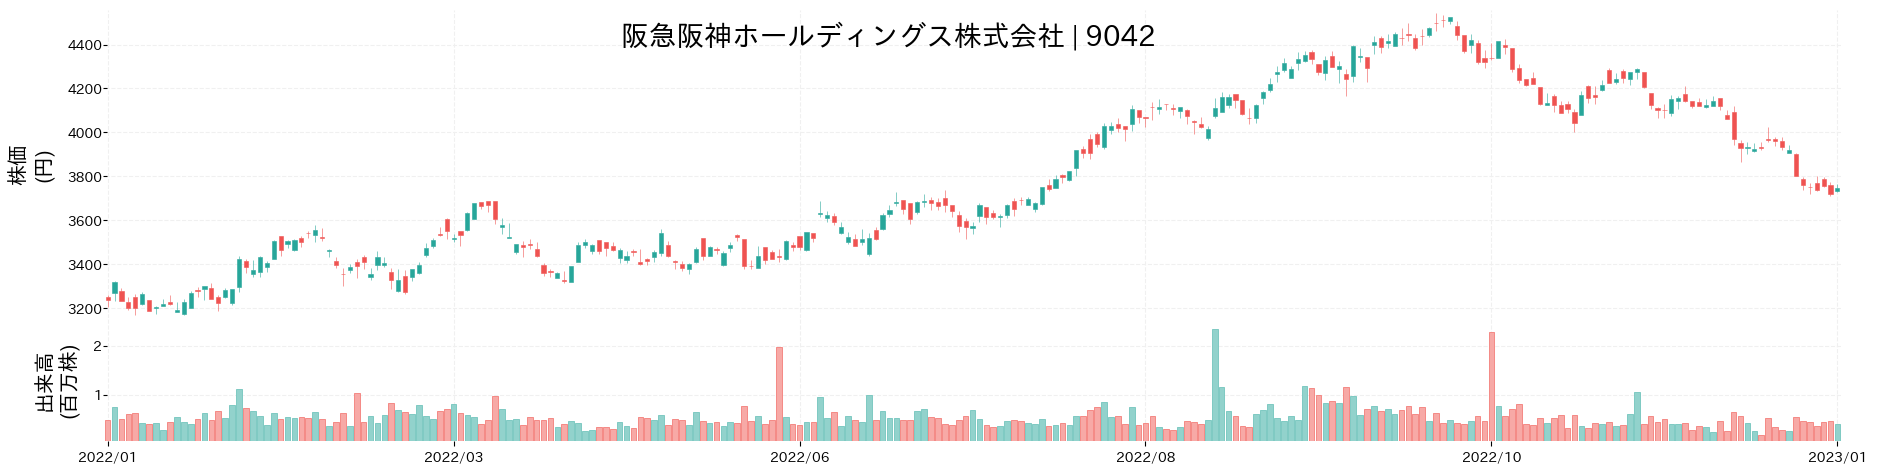 阪急阪神ホールディングスの株価推移(2022)